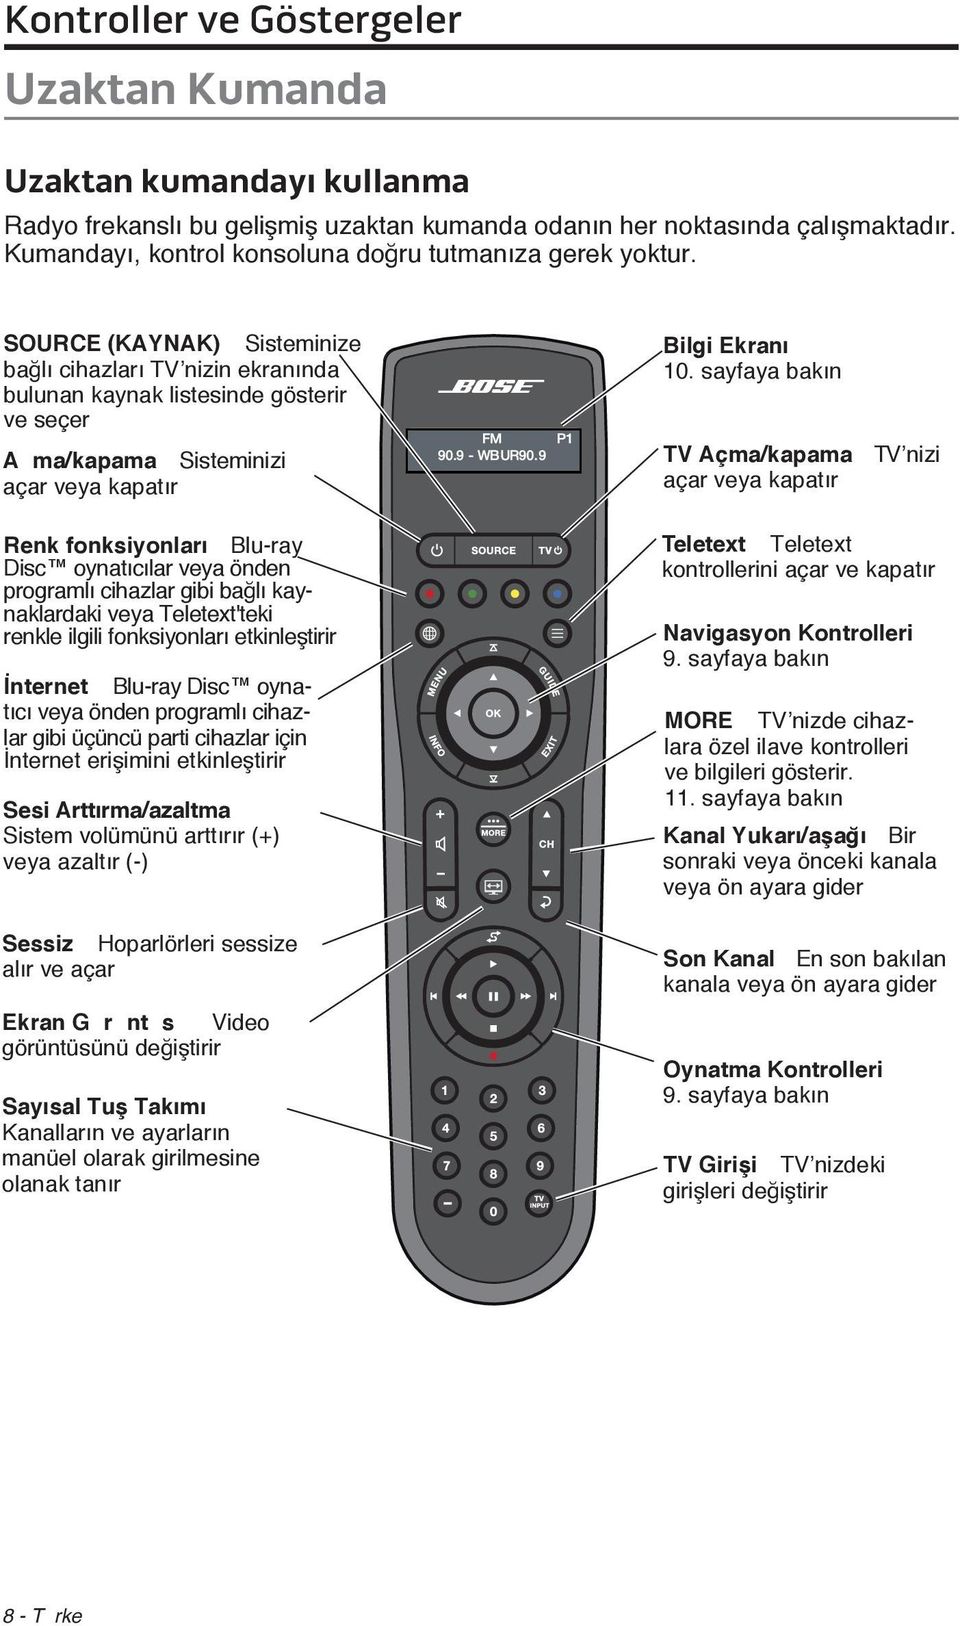 SOURCE (KAYNAK) Ð Sisteminize bağlı cihazları TV nizin ekranında bulunan kaynak listesinde gösterir ve seçer A ma/kapama Ð Sisteminizi açar veya kapatır Renk fonksiyonları Ð Blu-ray Disc oynatıcılar